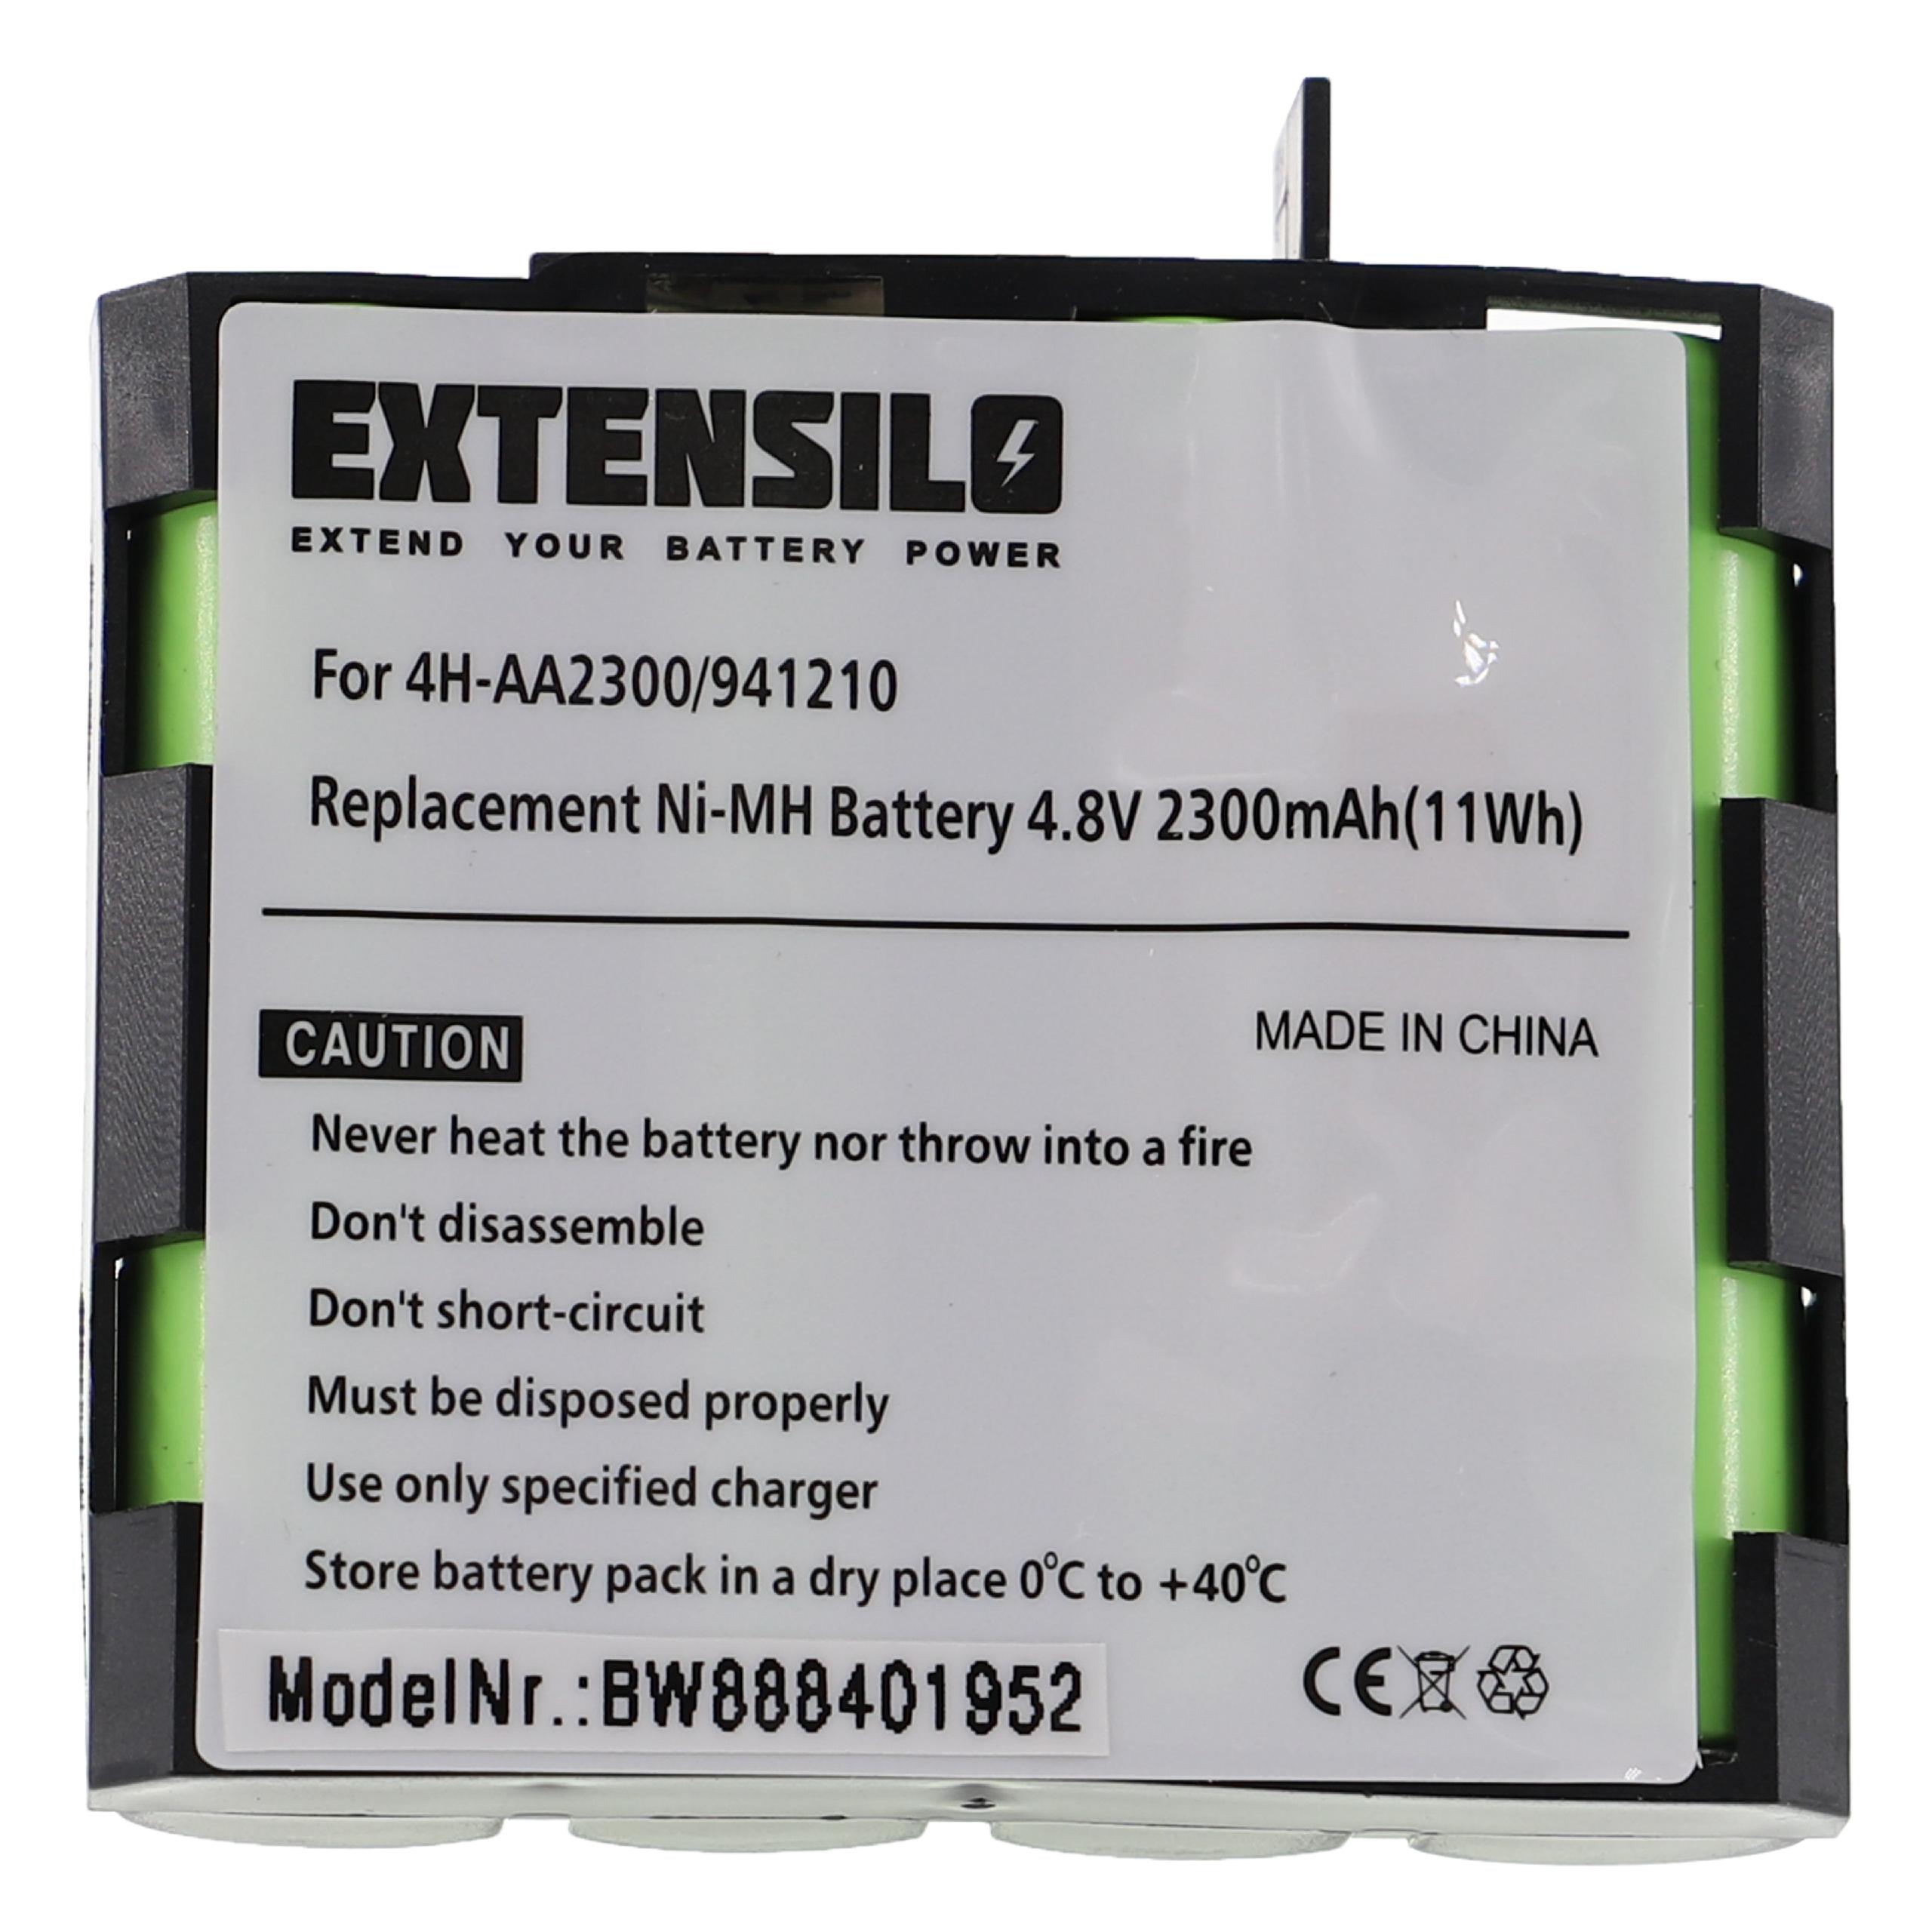 Batterie pour Compex Edge, Energy, Fit pour appareil médical - 2300mAh 4,8V NiMH